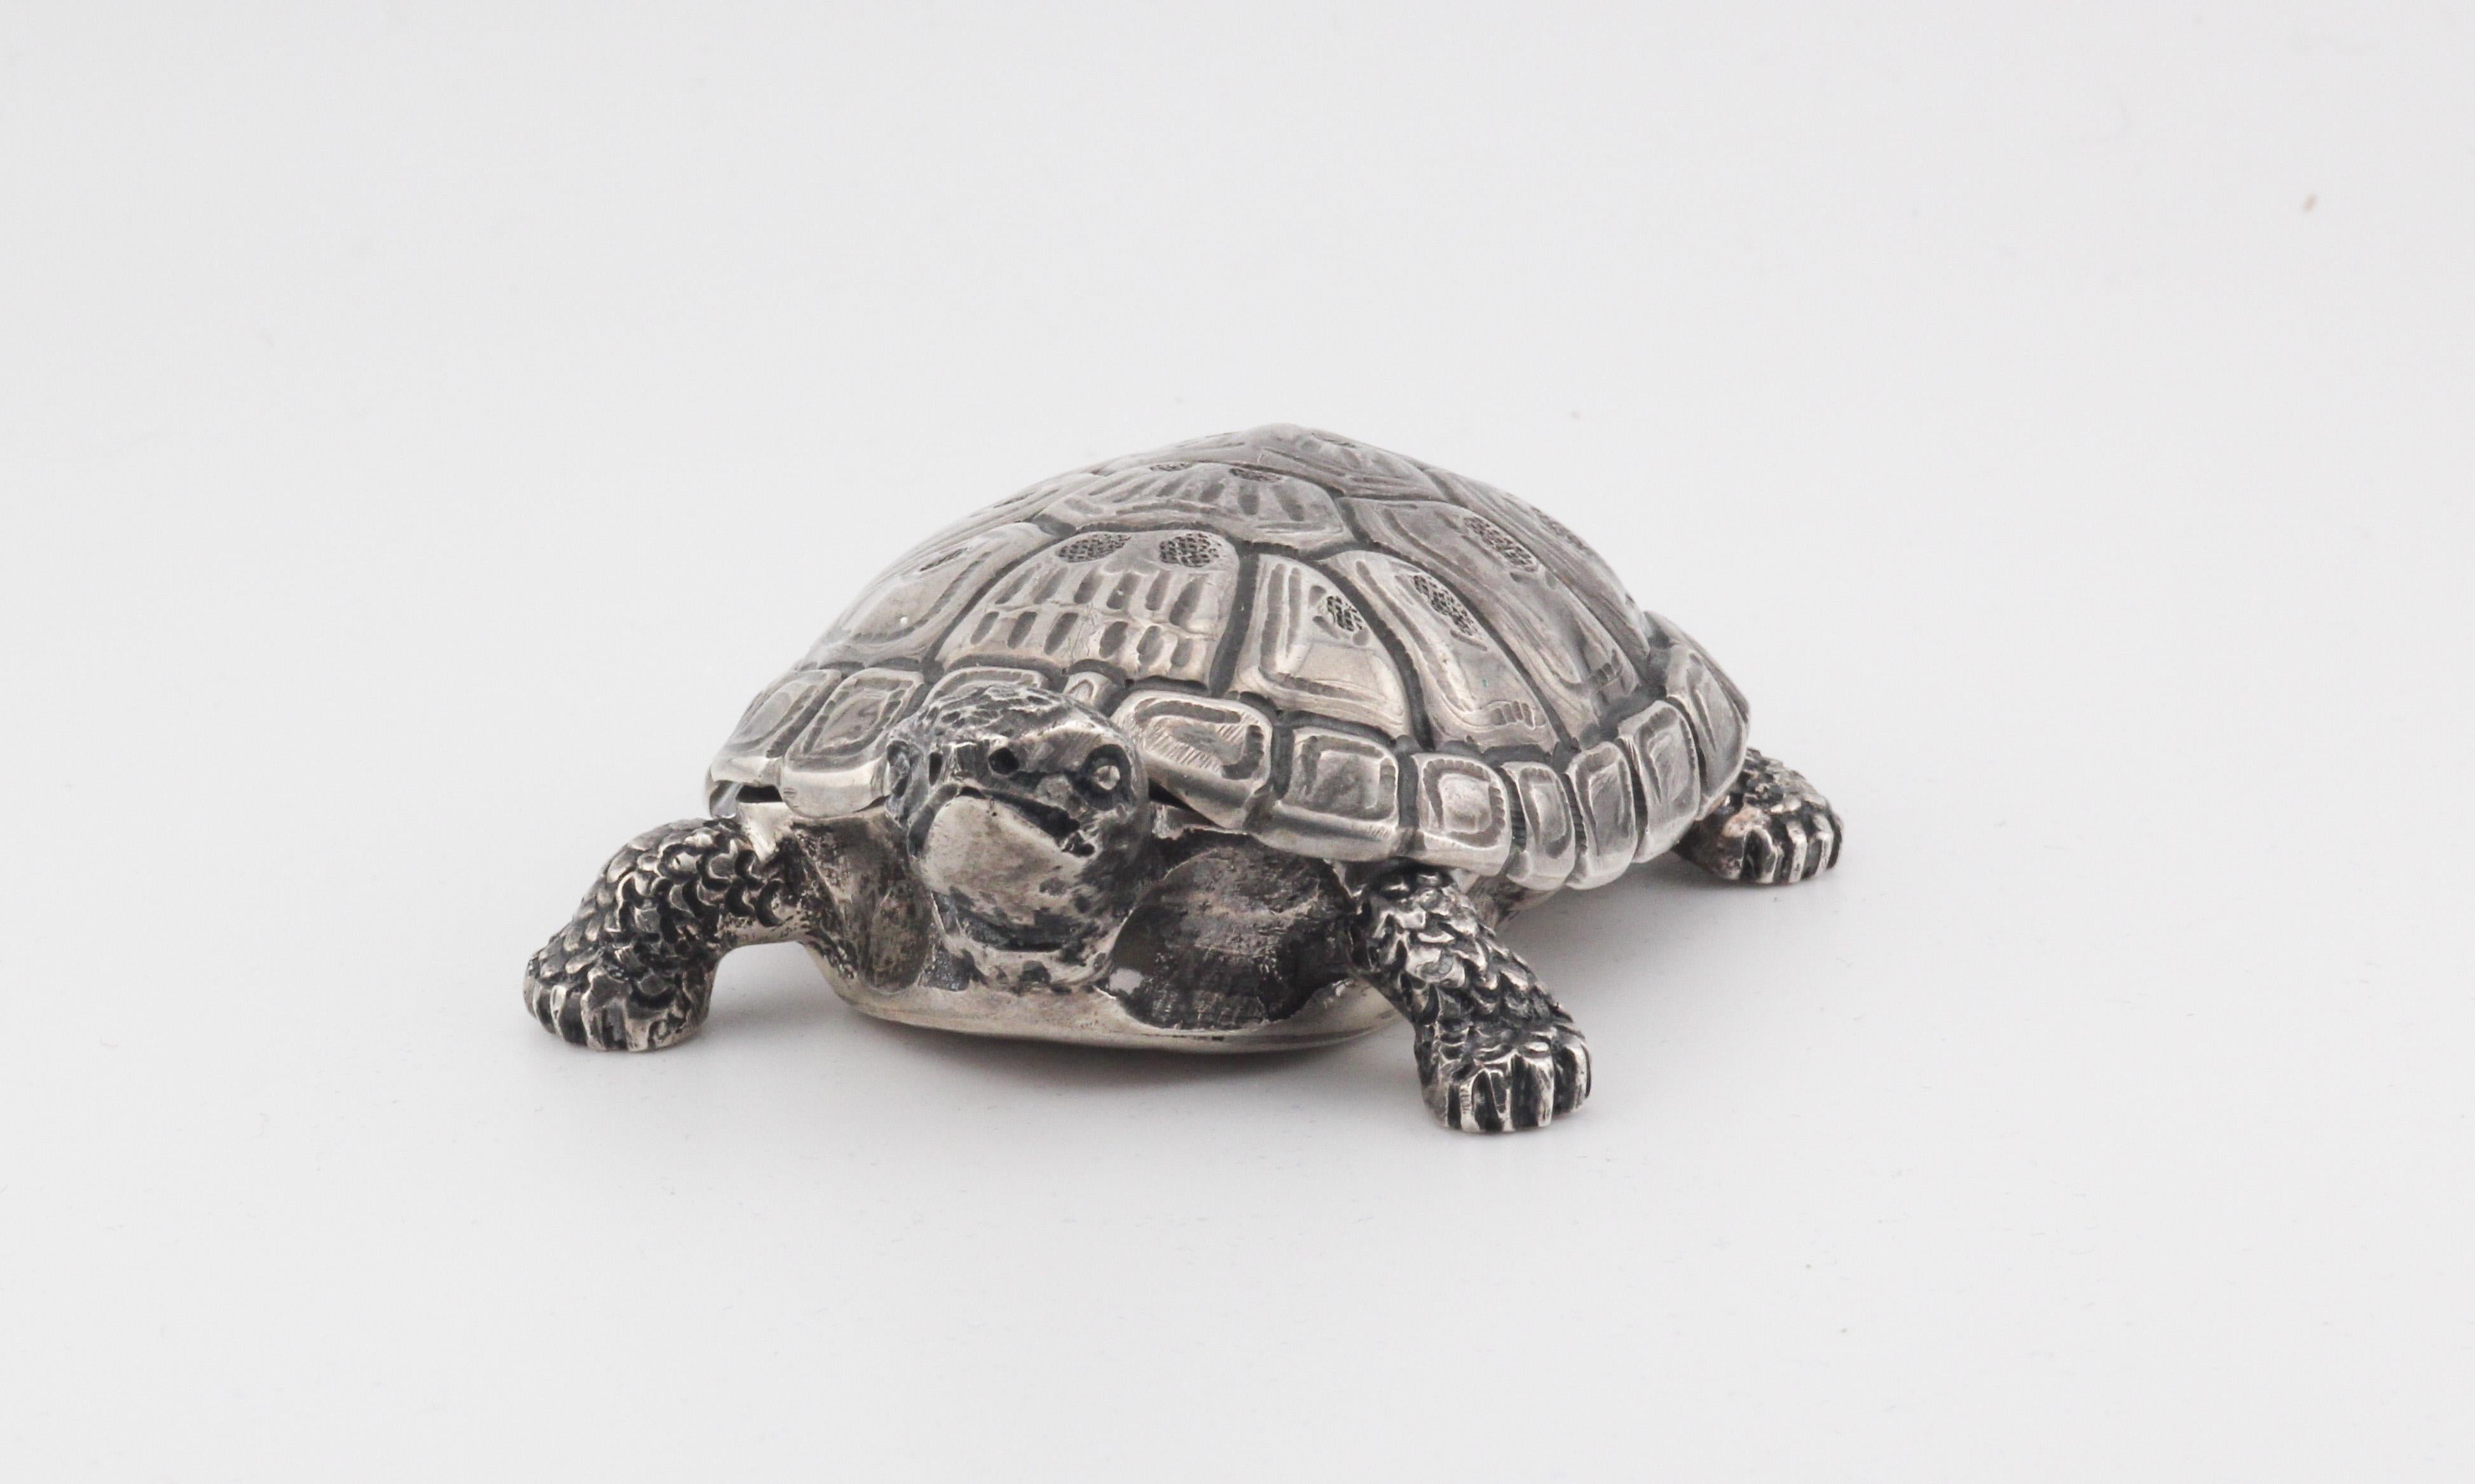 La boîte à tortue en argent sterling de Gianmaria Buccellati est une remarquable fusion de brillance artistique et de maîtrise artisanale, méticuleusement conçue pour capturer l'essence de la grâce de la nature. Cet objet d'art exquis sert non